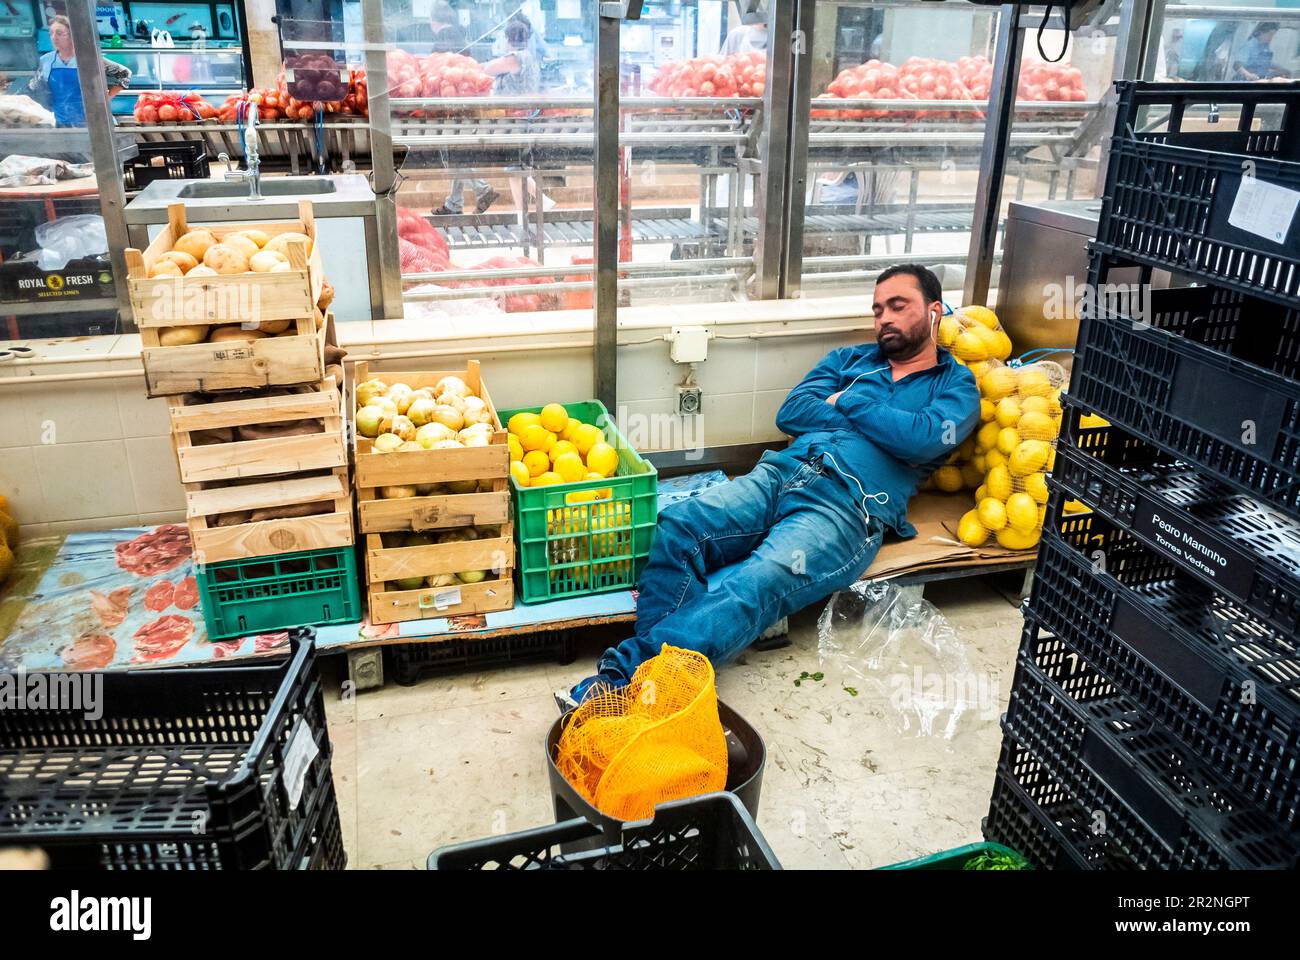 Lisbonne, Portugal, jeunes adultes, personnes, rodage des travailleurs, Sieste, à l'intérieur du marché de l'alimentation local, « Time Out Market », dormir sur le travail Banque D'Images